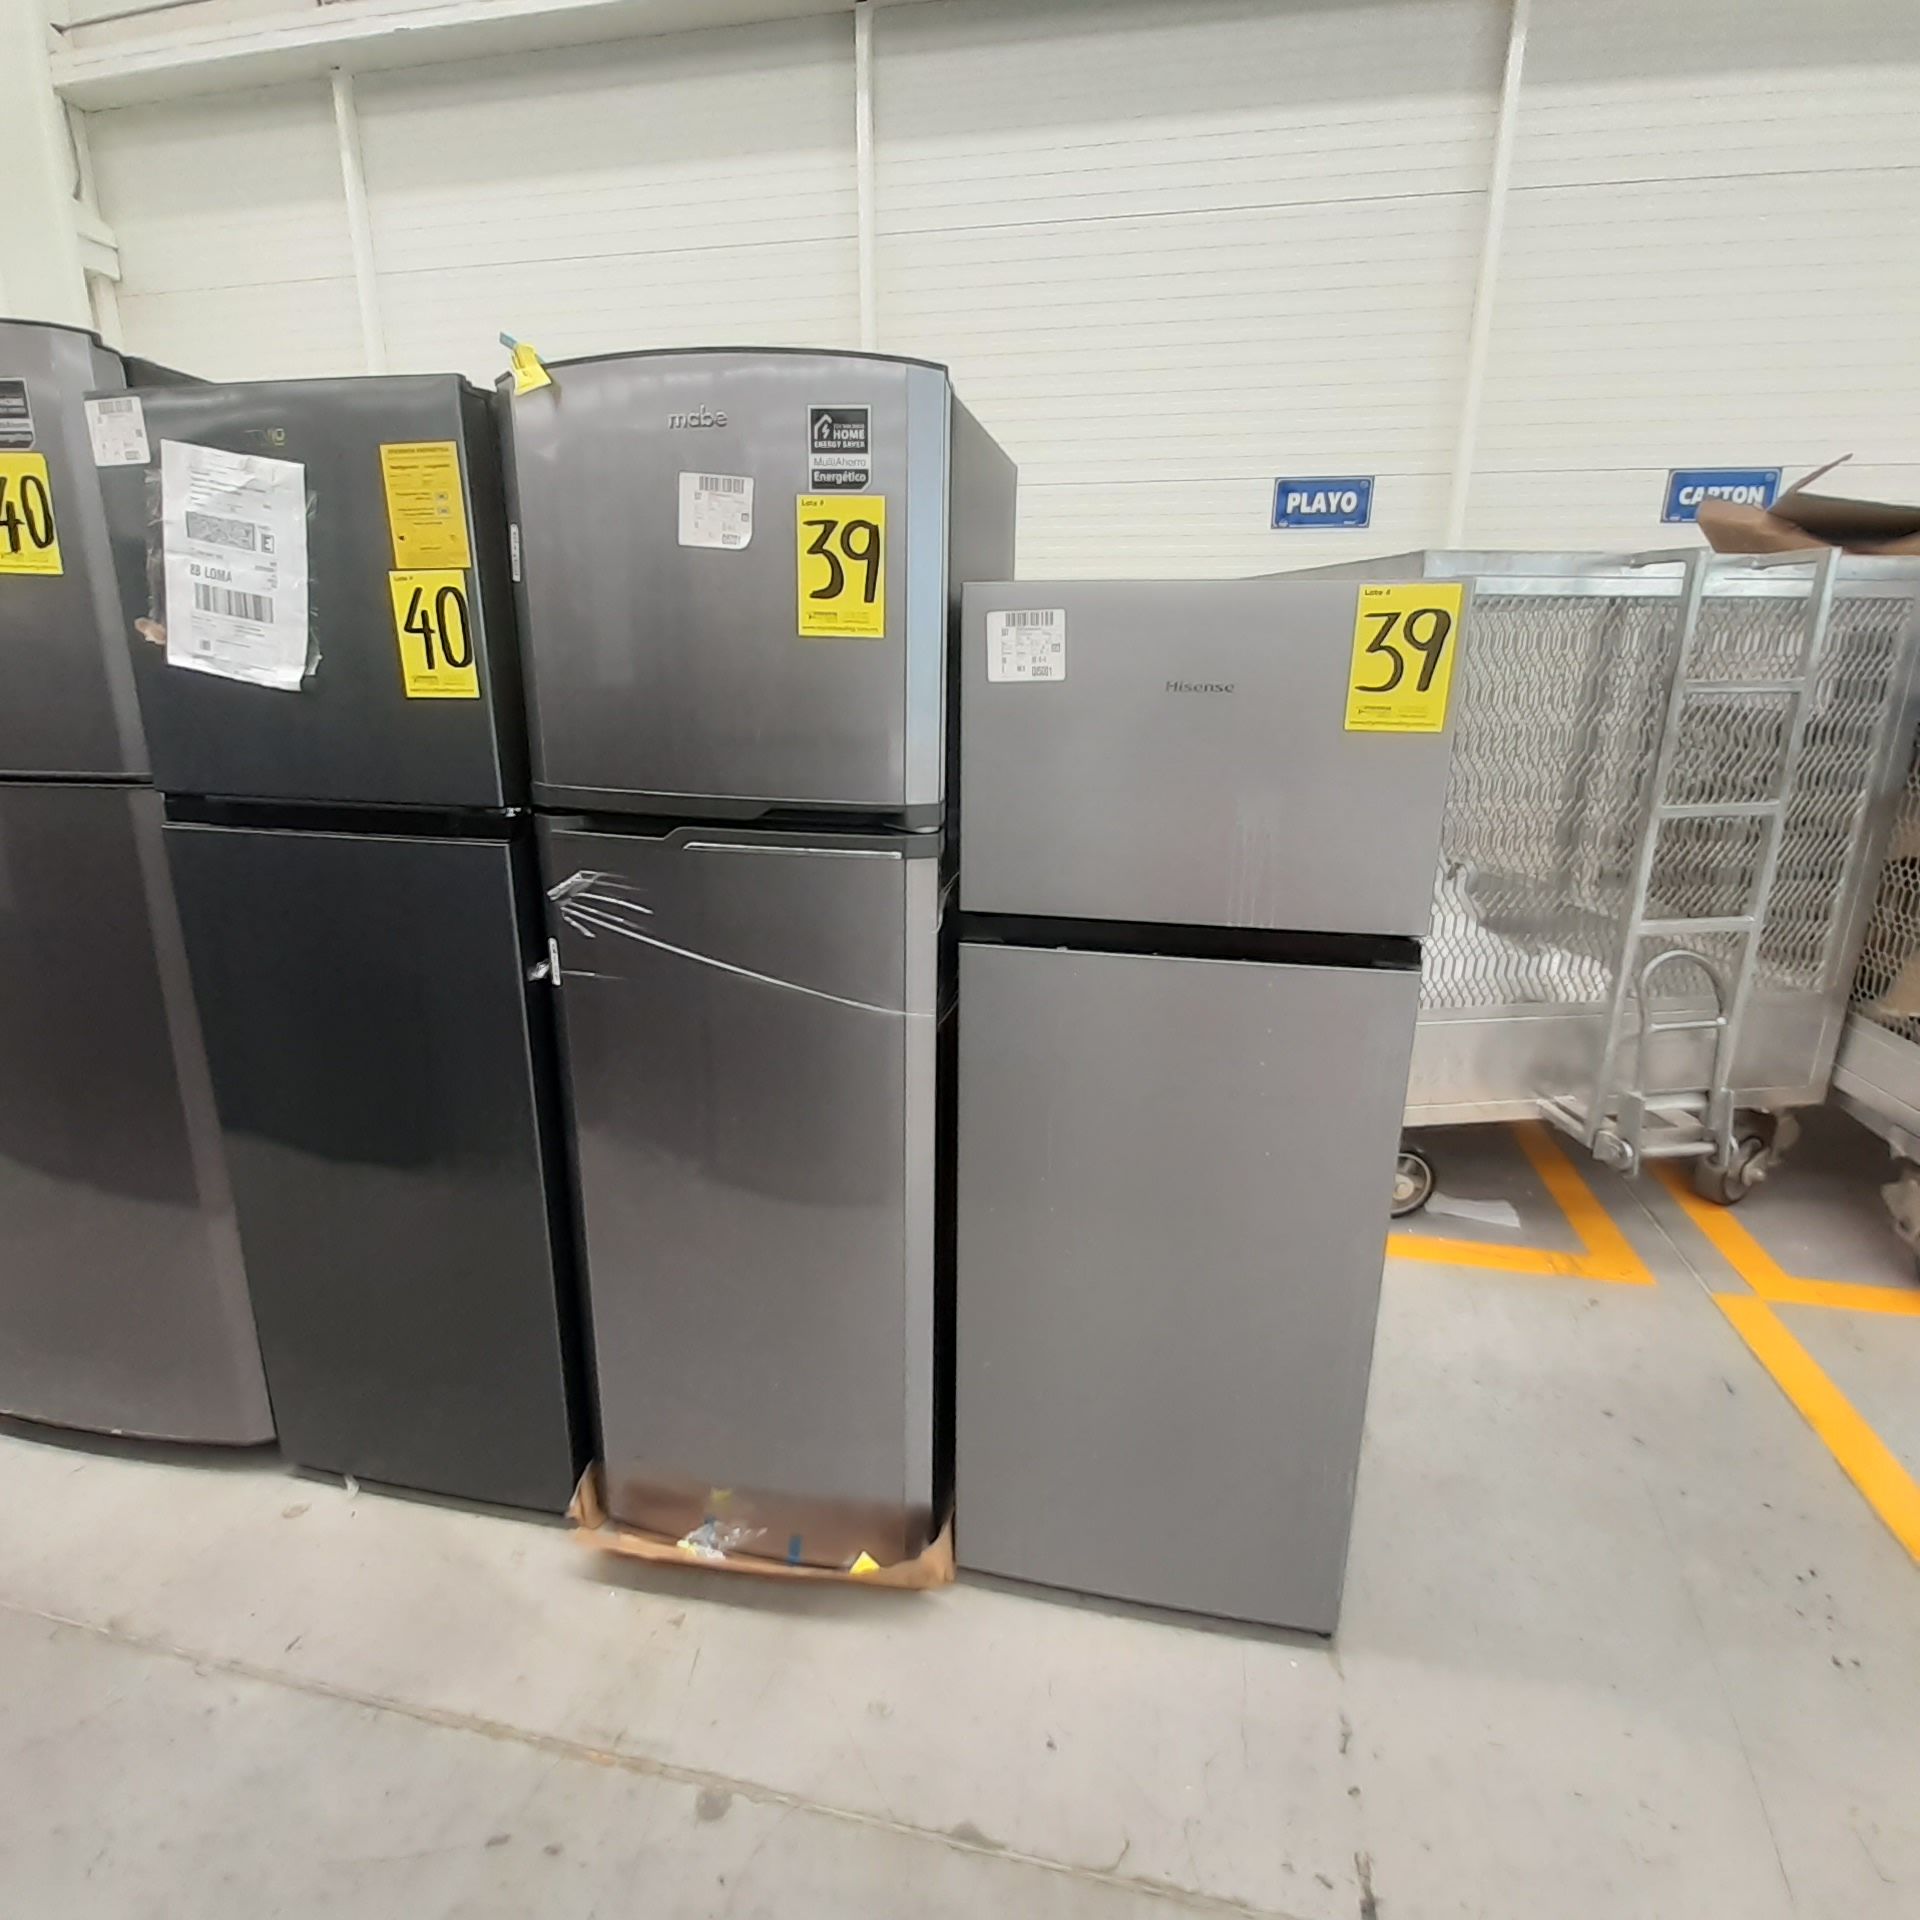 Lote De 2 Refrigeradores Contiene: 1 Refrigerador Marca Mabe, 1 Refrigerador Marca Hisense, Distinto